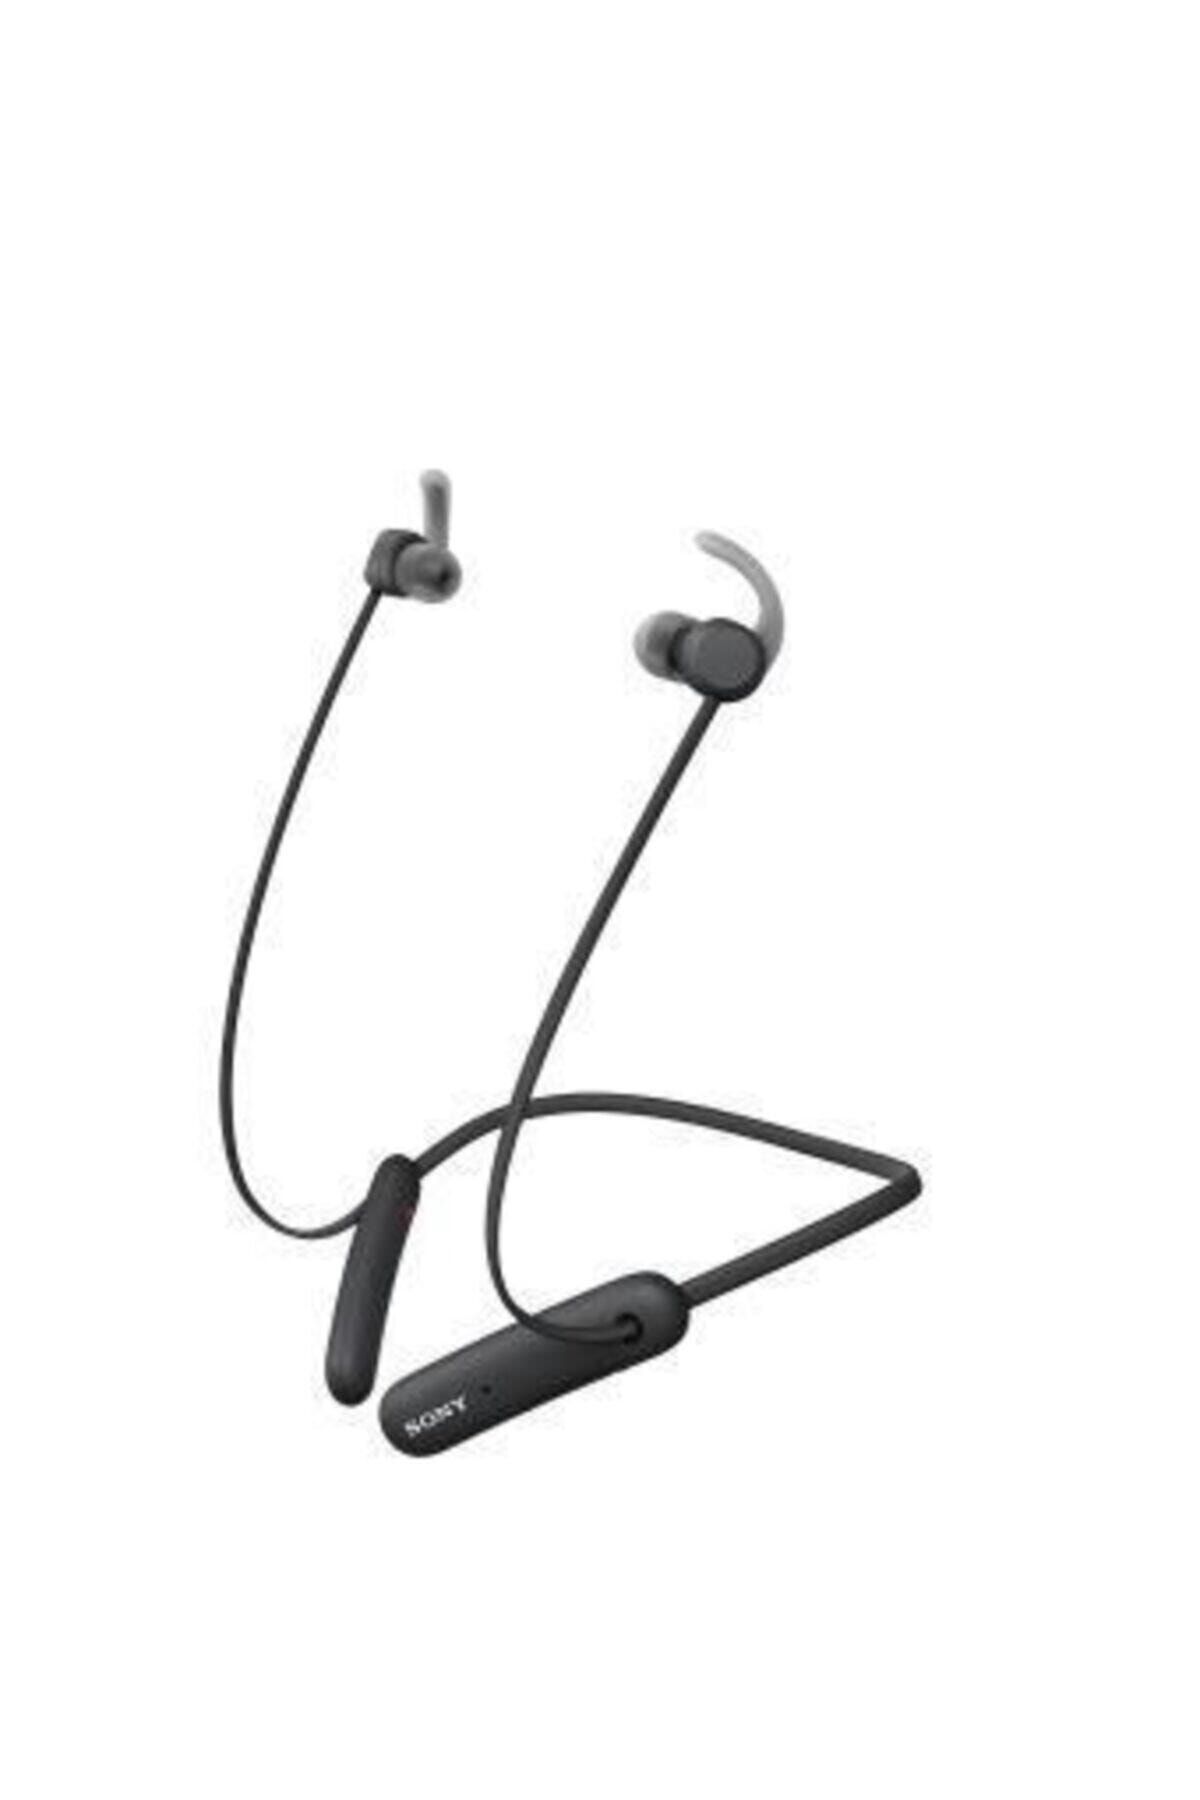 Sony Siyah Ipx5 Extra Bass Kulakiçi Bluetooth Kulaklık Wı-sp510